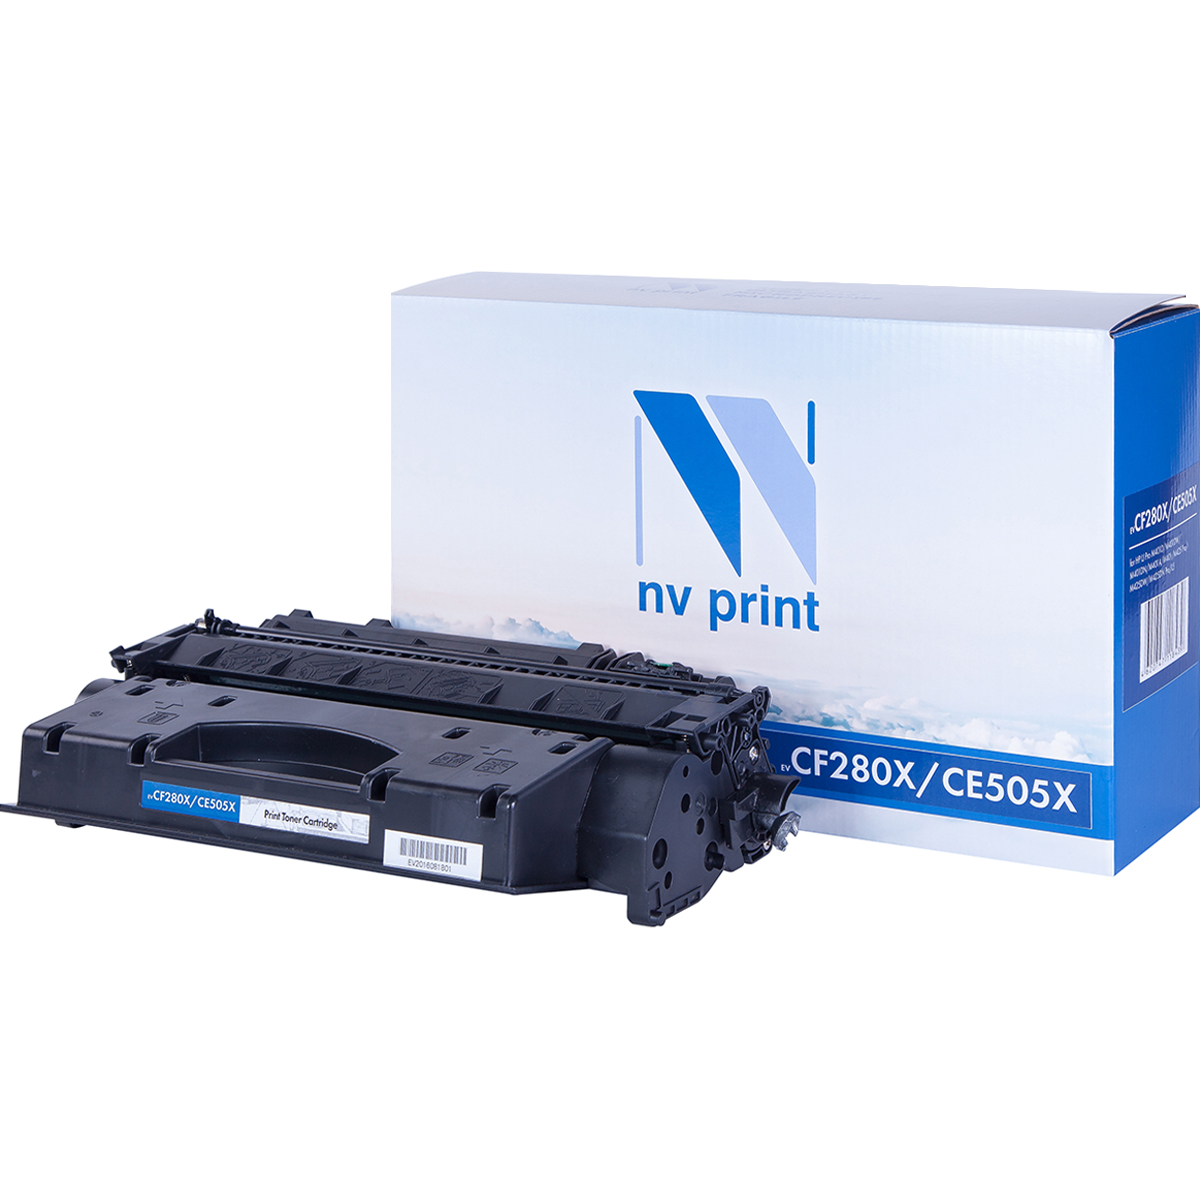 Картридж NV Print совместимый NV-CF280X/CE505X для HP LJ Pro 400 MFP 425sn/400MFP M425dw